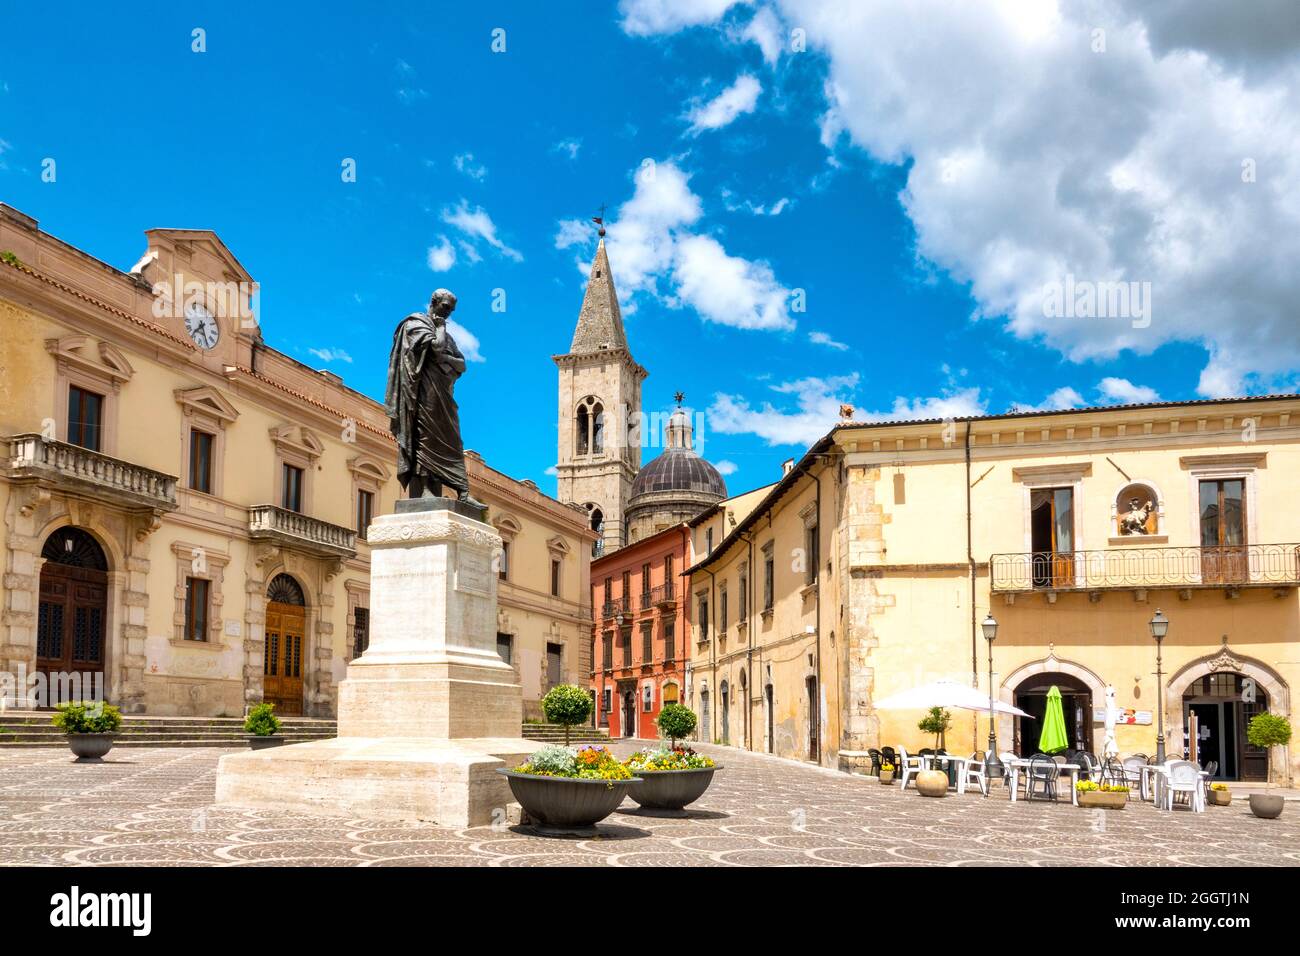 Statue of Ovid in Piazza XX Settembre, Sulmona, Italy Stock Photo